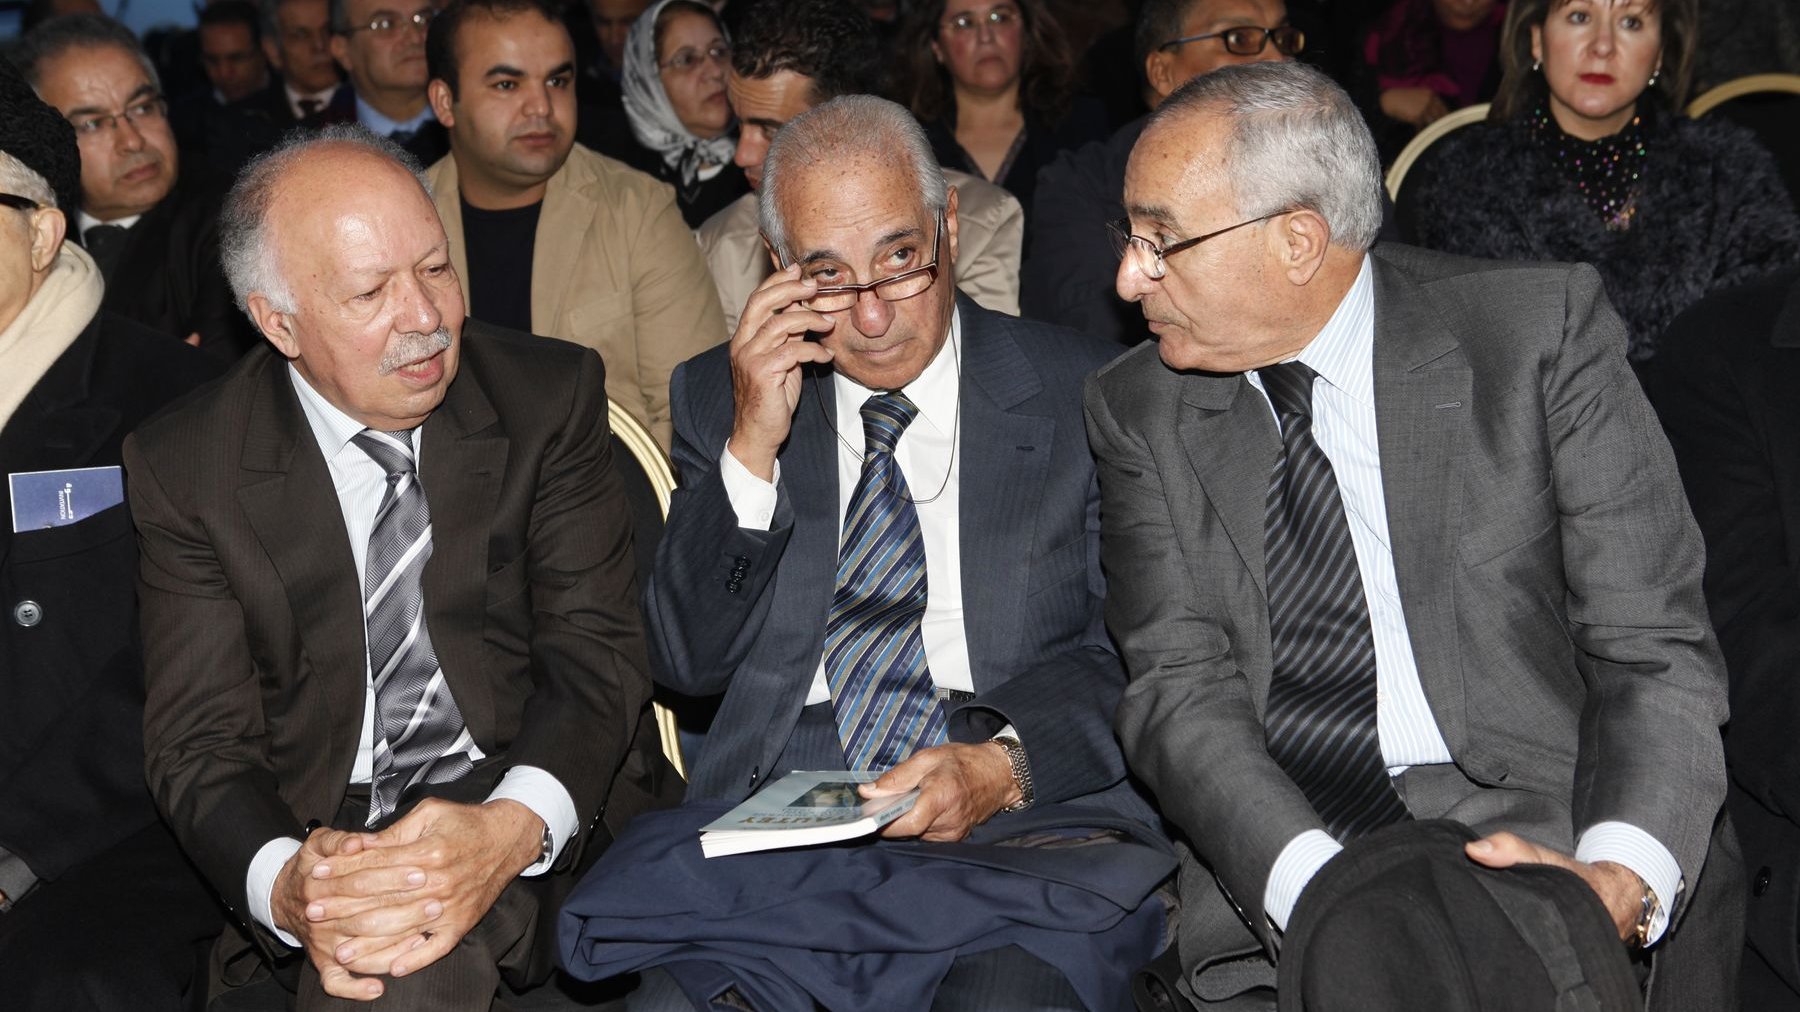 Abdelhak Lamrini, porte-parole du Palais, garde son sérieux pendant que son voisin, Khalid Naciri, l'ancien ministre de la Communication, échange quelques mots avec les autres invités.
